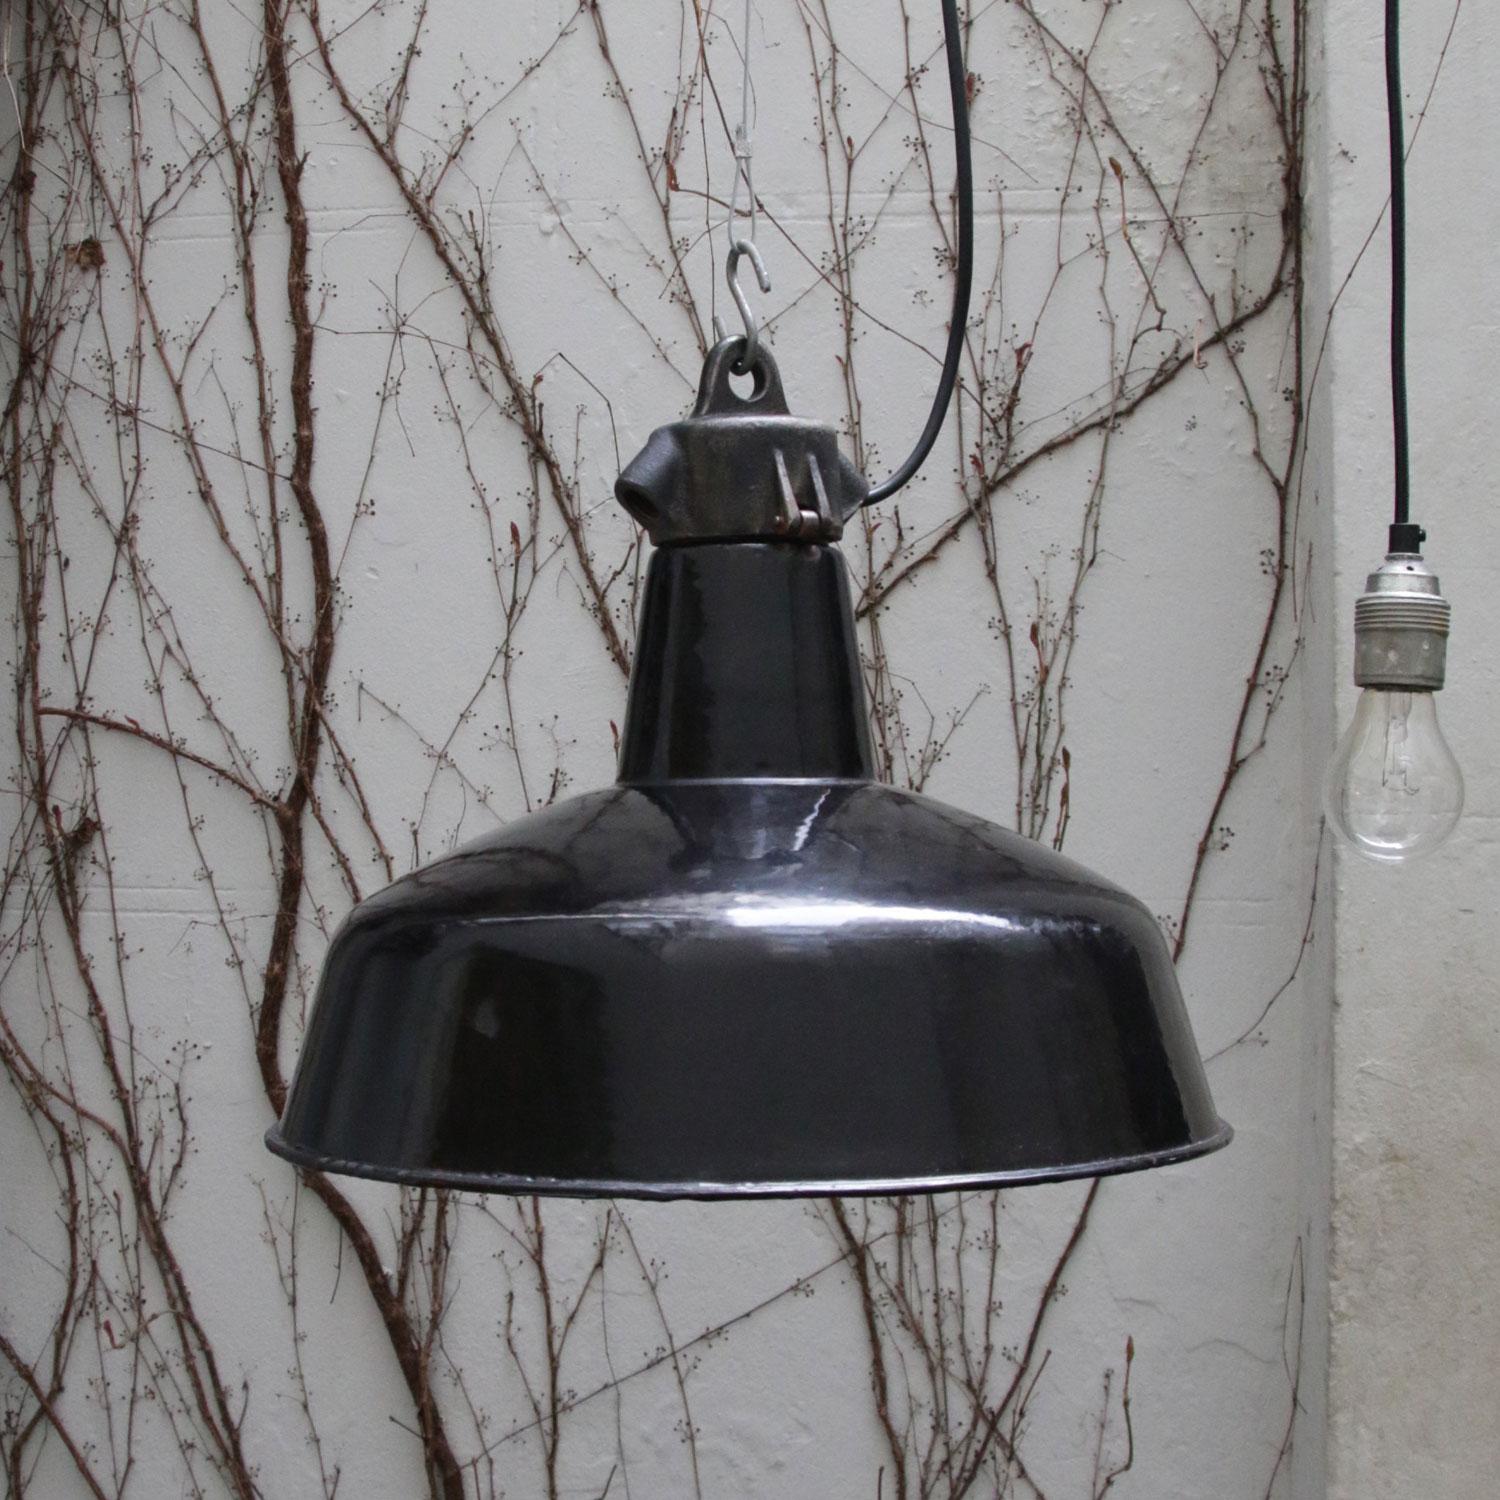 Black Enamel Vintage Industrial Cast Iron Top 1930s Bauhaus Pedant Lights 2